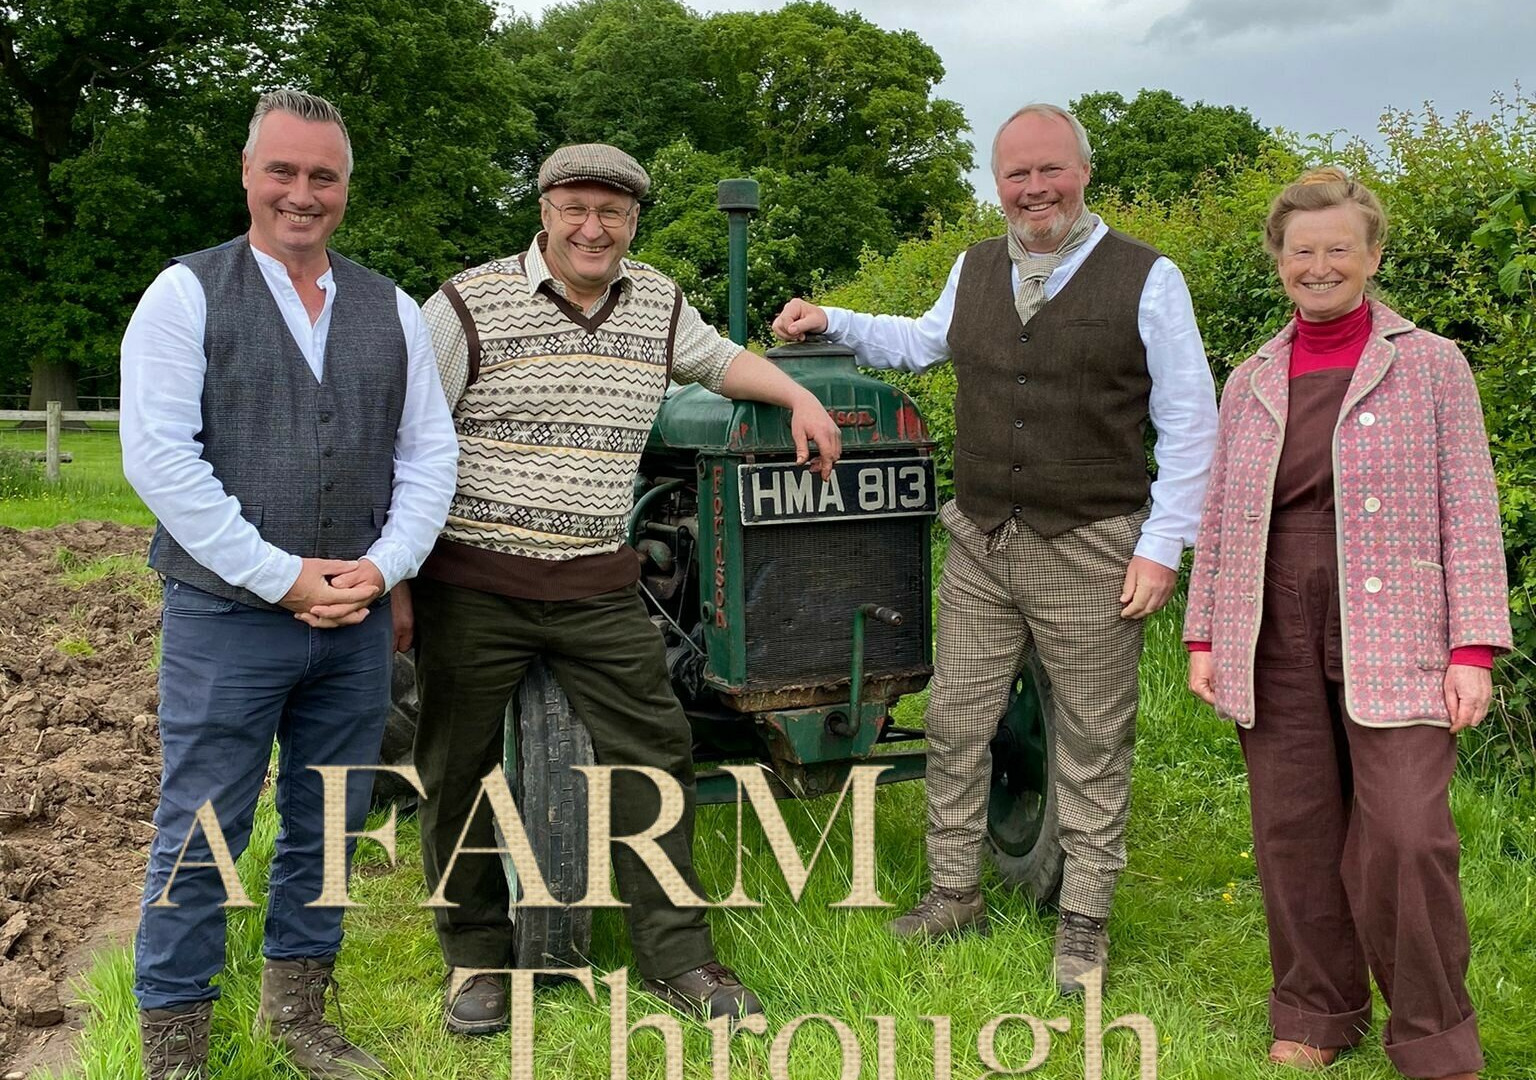 Show A Farm Through Time